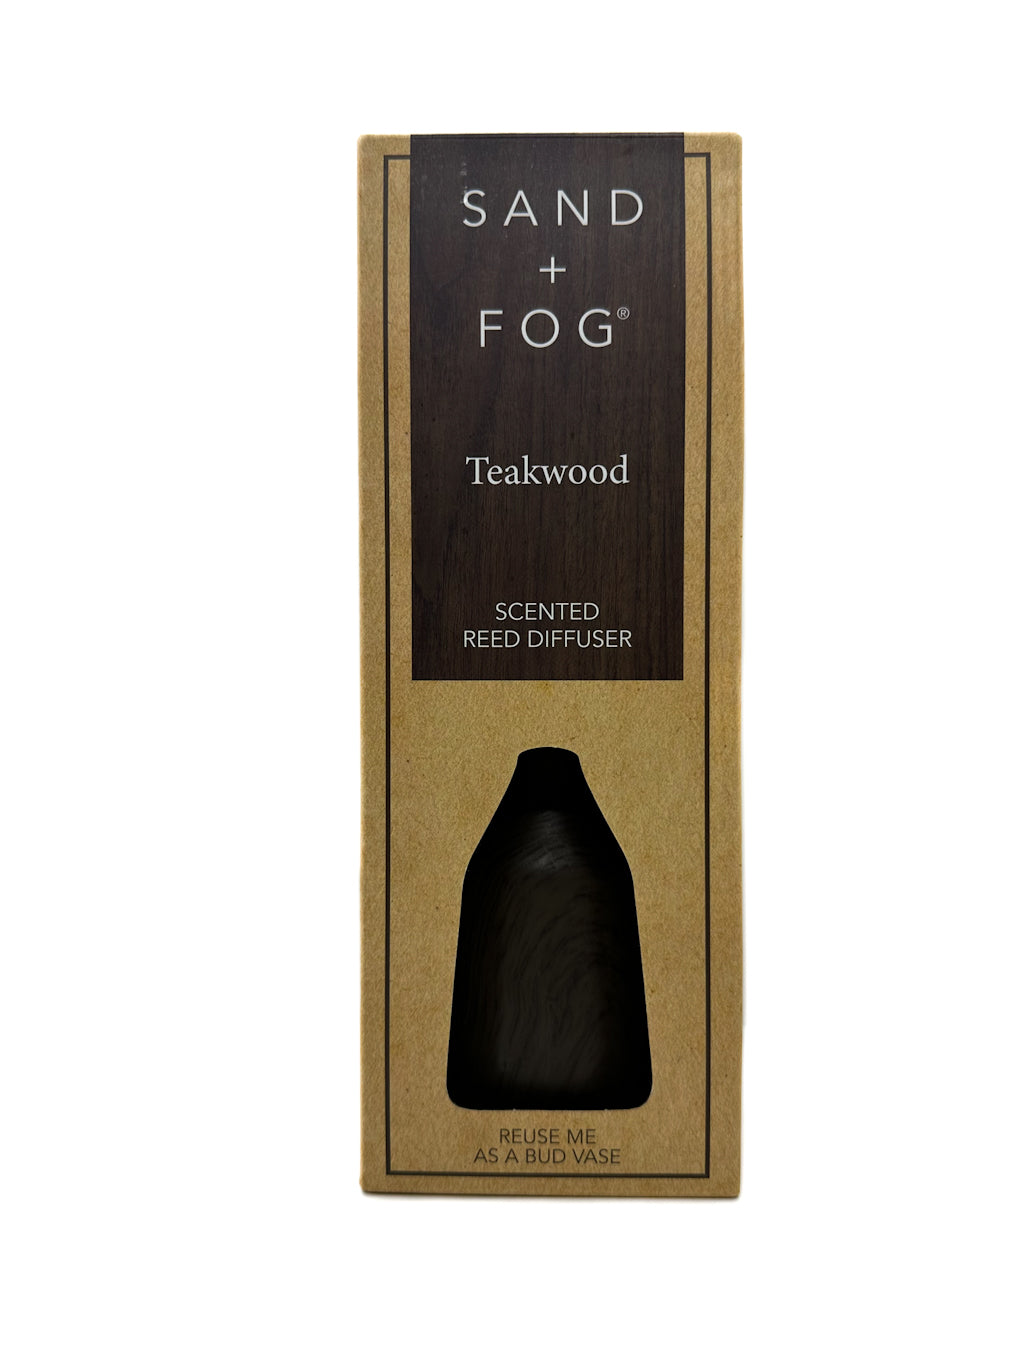 Sand + Fog Teakwood reed diffuser